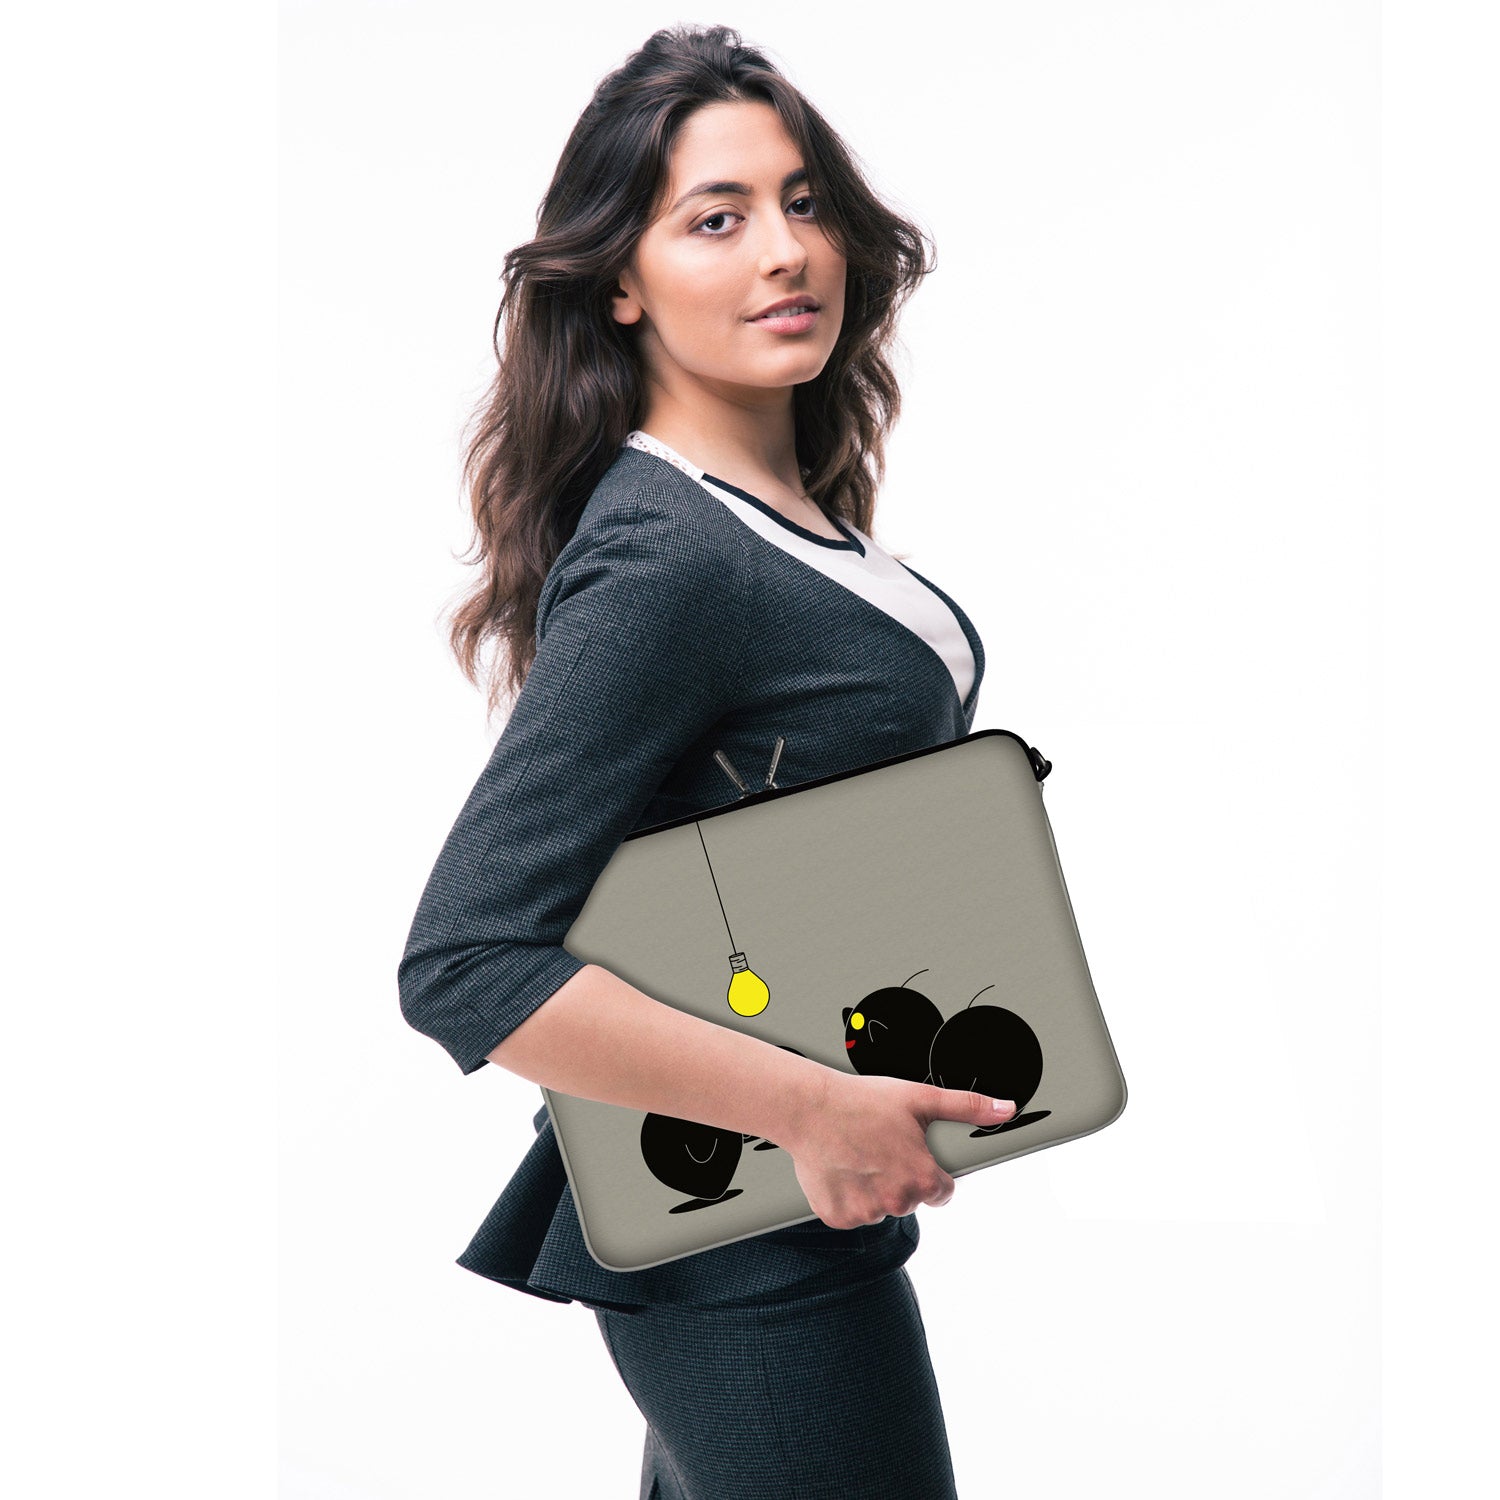 LS157 Illumination Designer Laptop Tasche in grau mit Ösen zum Anhängen von Accessoires